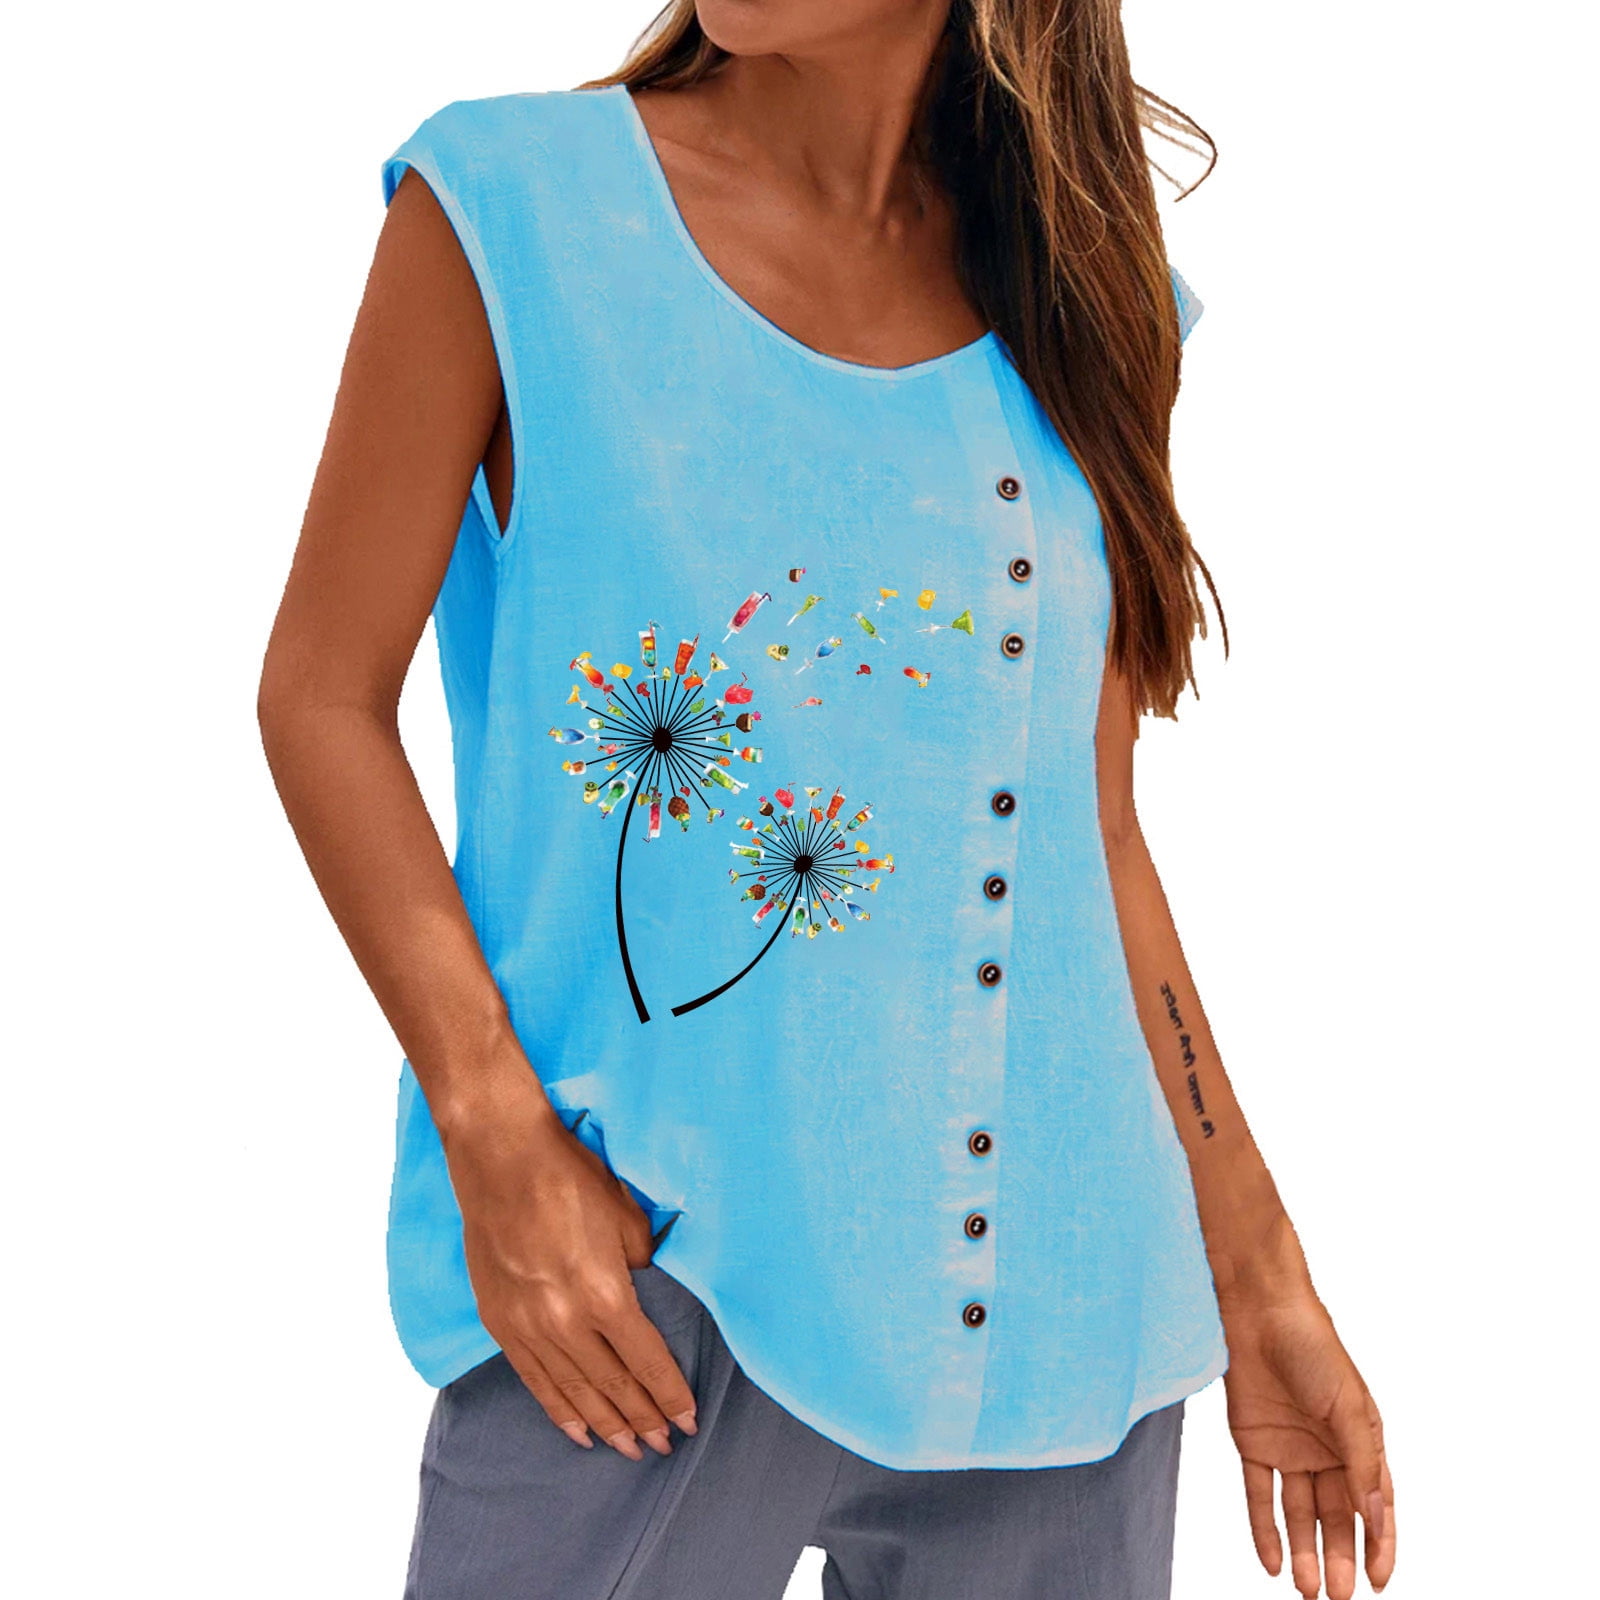 Womens Summer Casual Cotton Linen Vest Top Sleeveless Blouse Tank Tops T-Shirt 